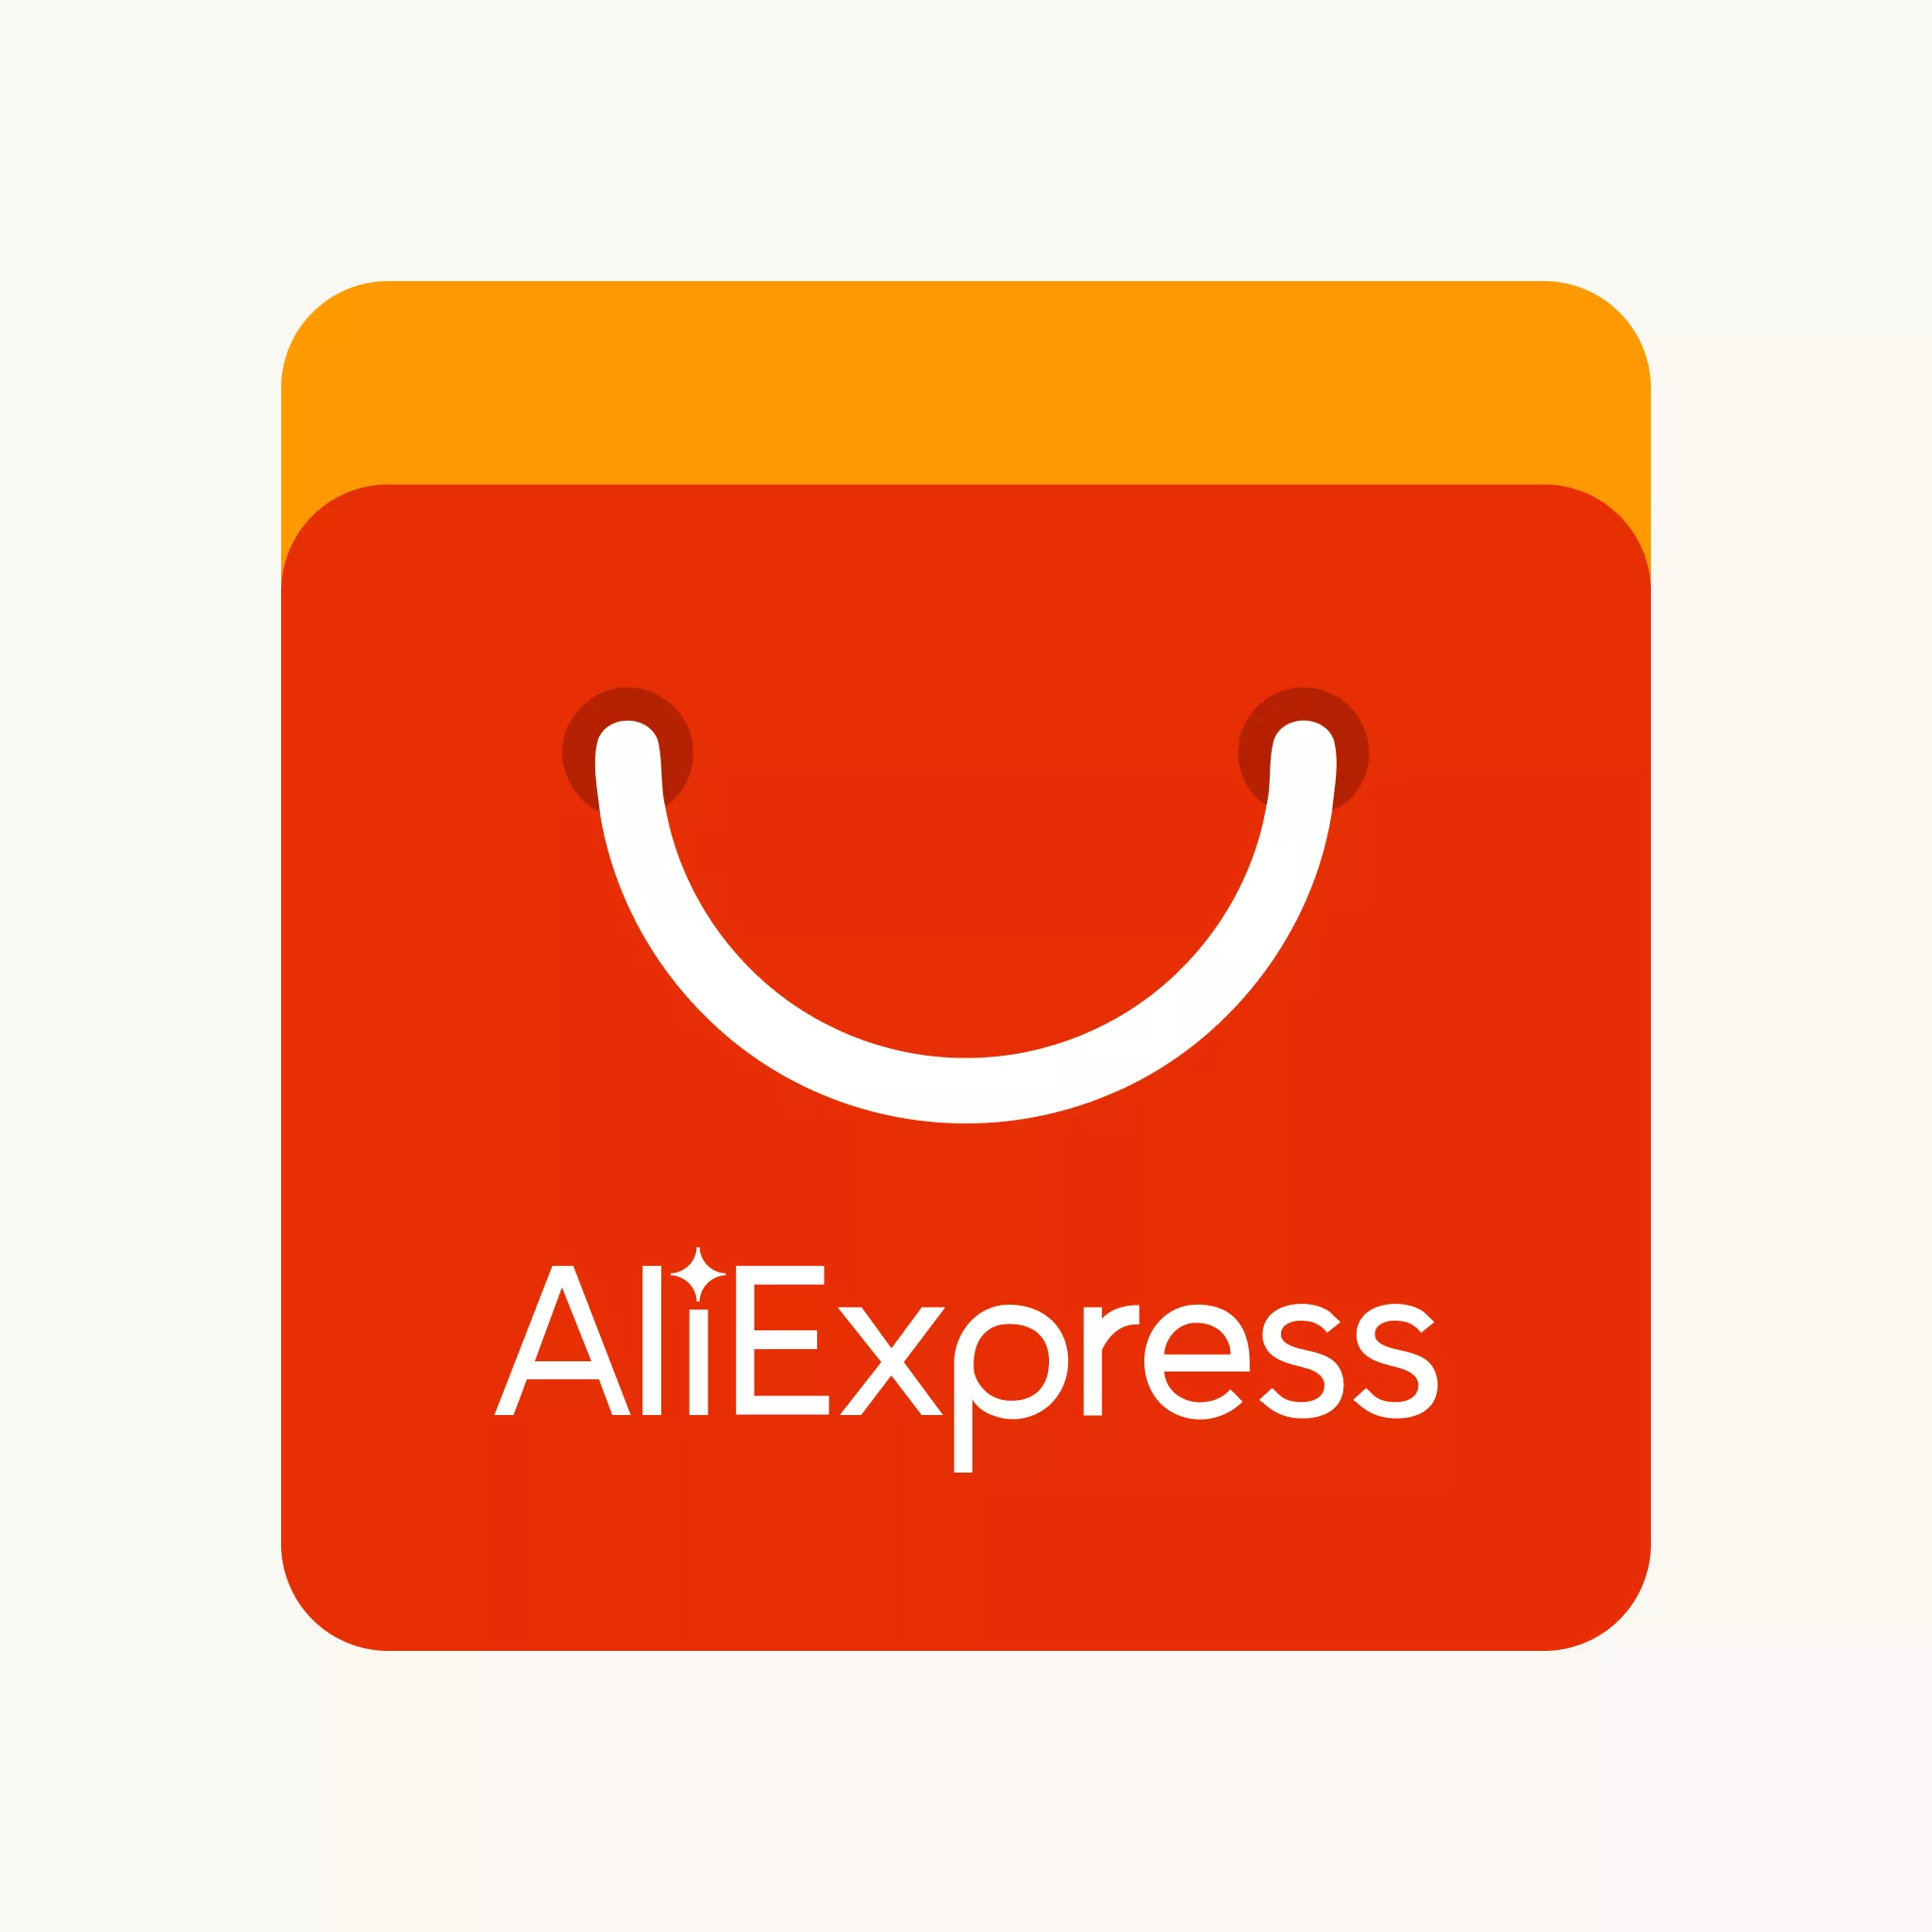 Compre No Aliexpress Com Google Pay Do Dia 25/11 At 05/12 E Ganhe R$25 Off Acima De R$50